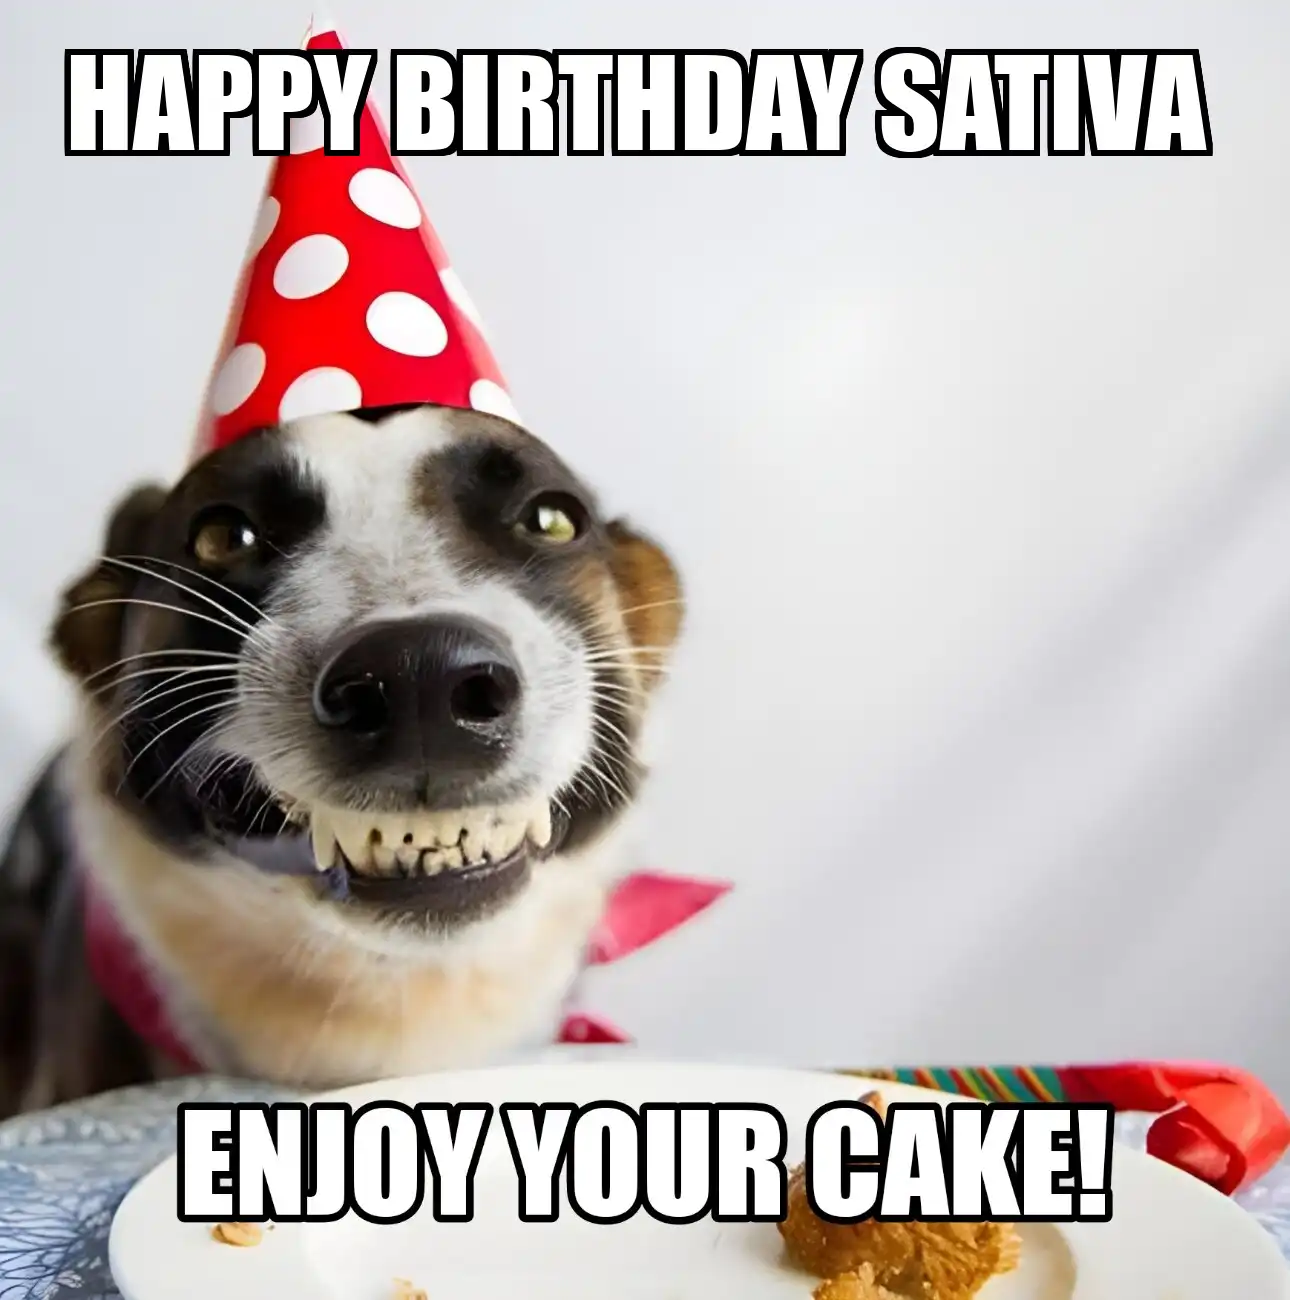 Happy Birthday Sativa Enjoy Your Cake Dog Meme